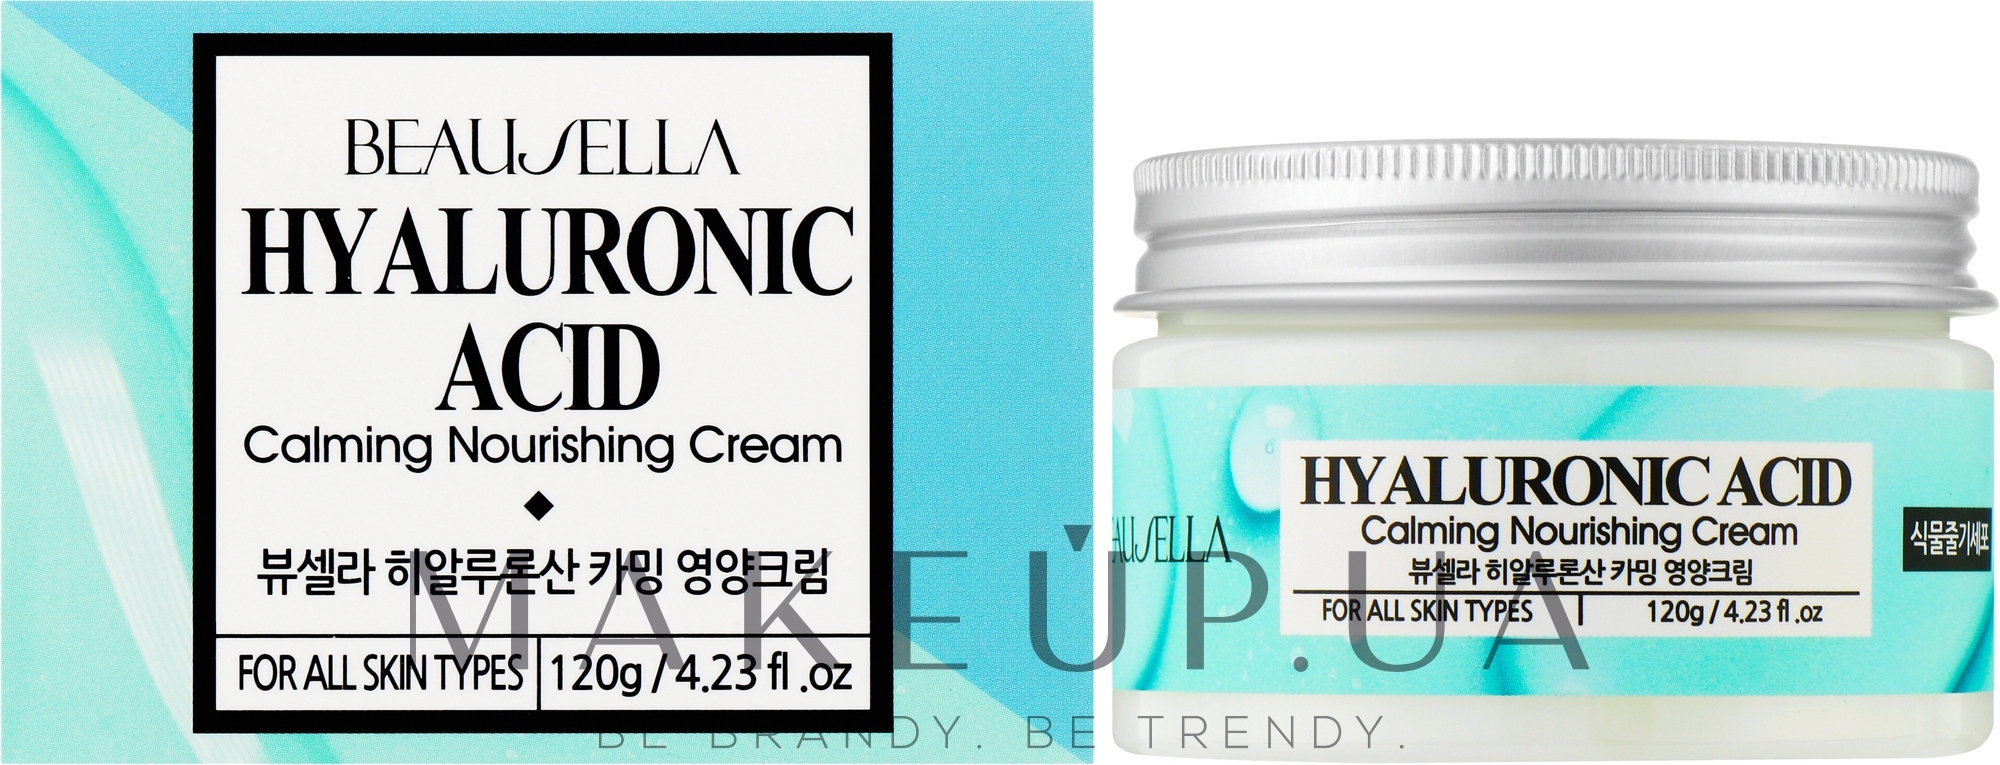 Увлажняющий крем с гиалуроновой кислотой - Beausella Hyaluronic Acid Calming Nourishing Cream — фото 120g